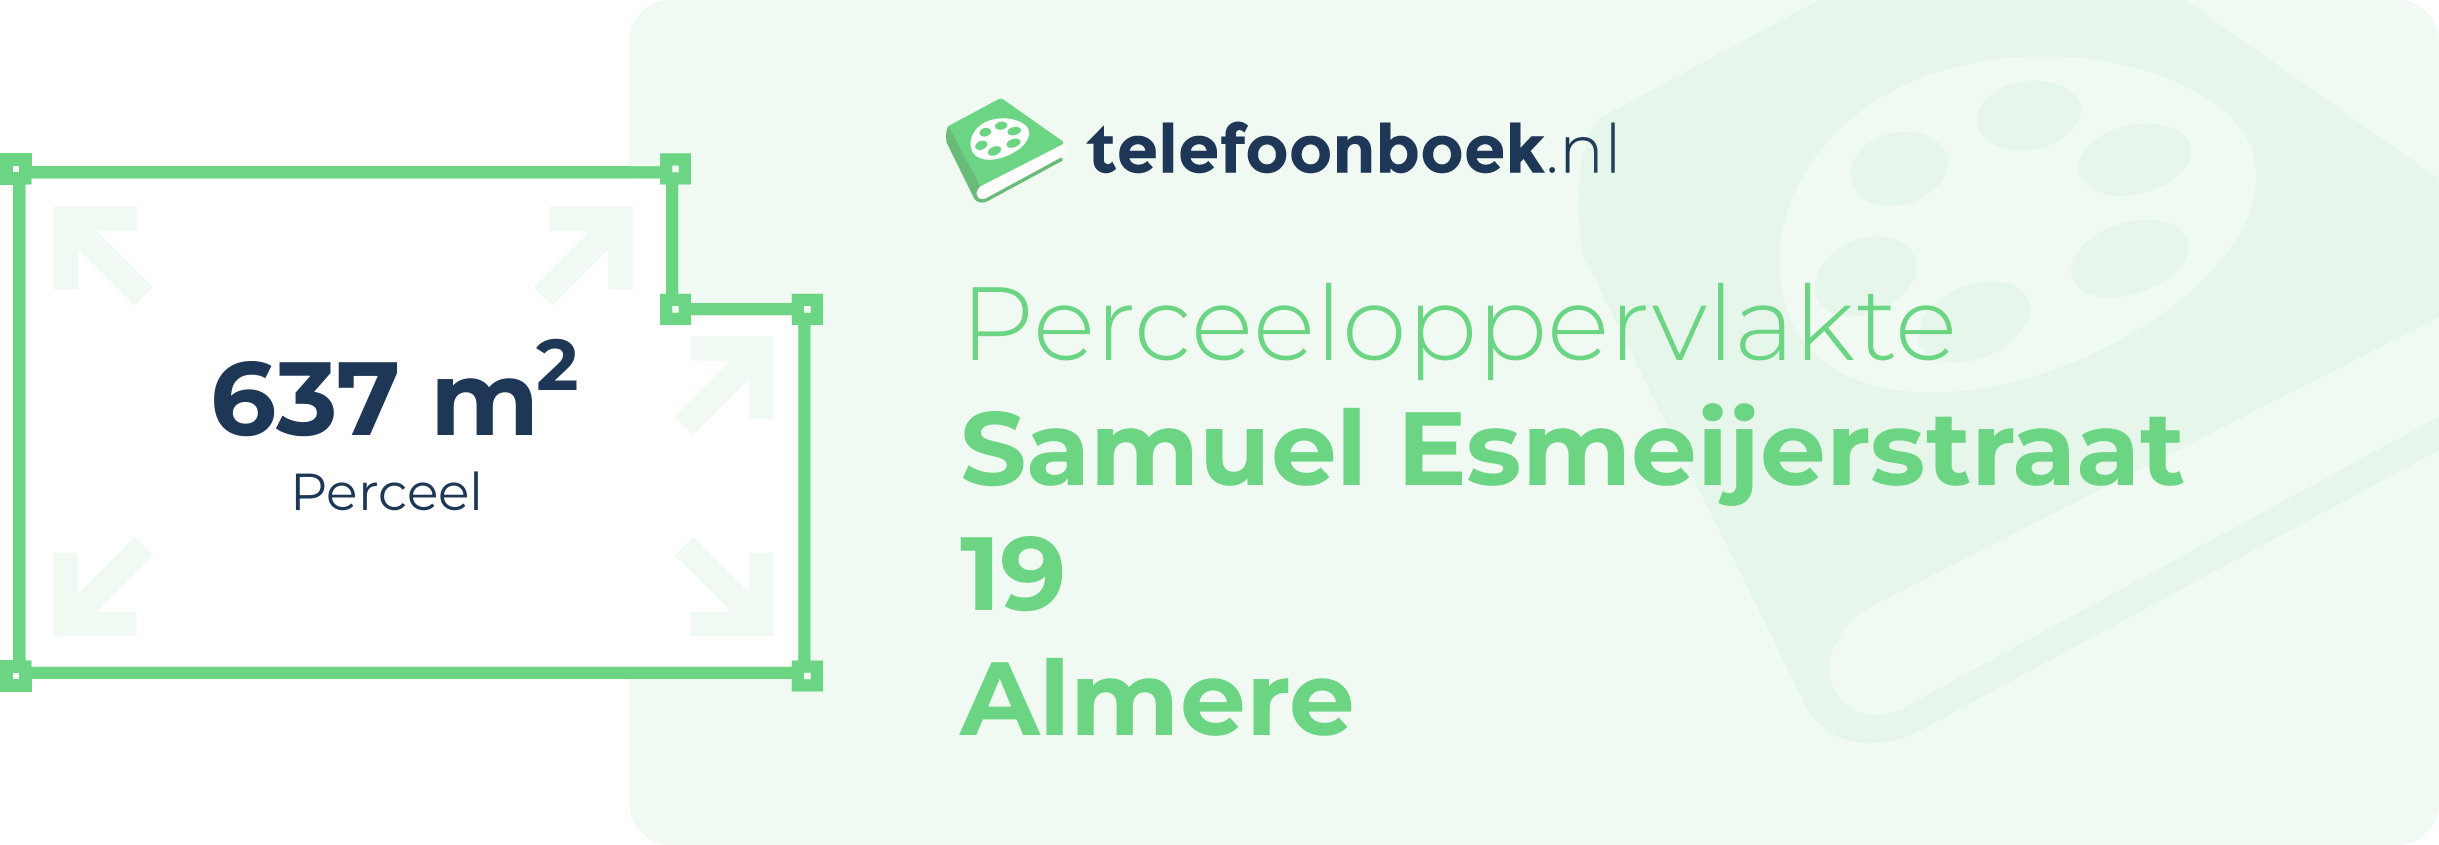 Perceeloppervlakte Samuel Esmeijerstraat 19 Almere